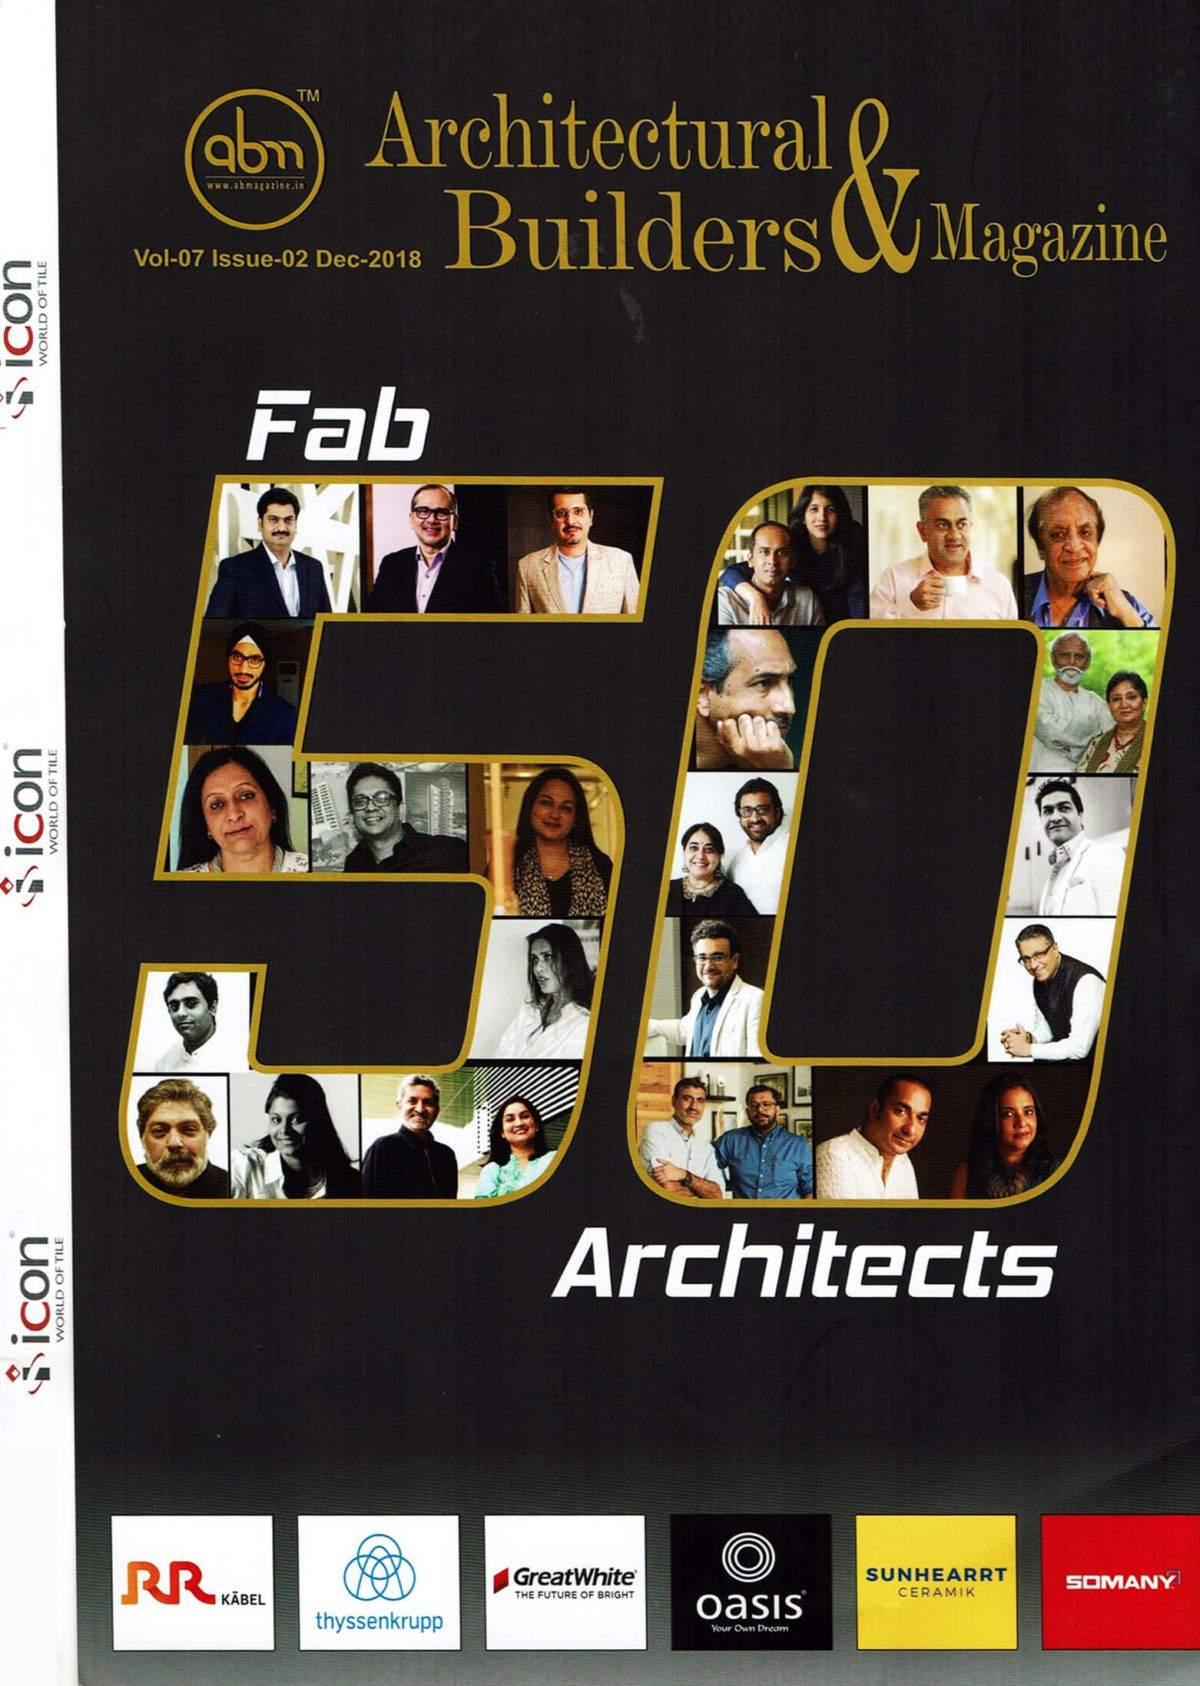 FAB 50 ARCHITECTS - PAVITRA SRIPRAKASH OF SHILPA ARCHITECTS